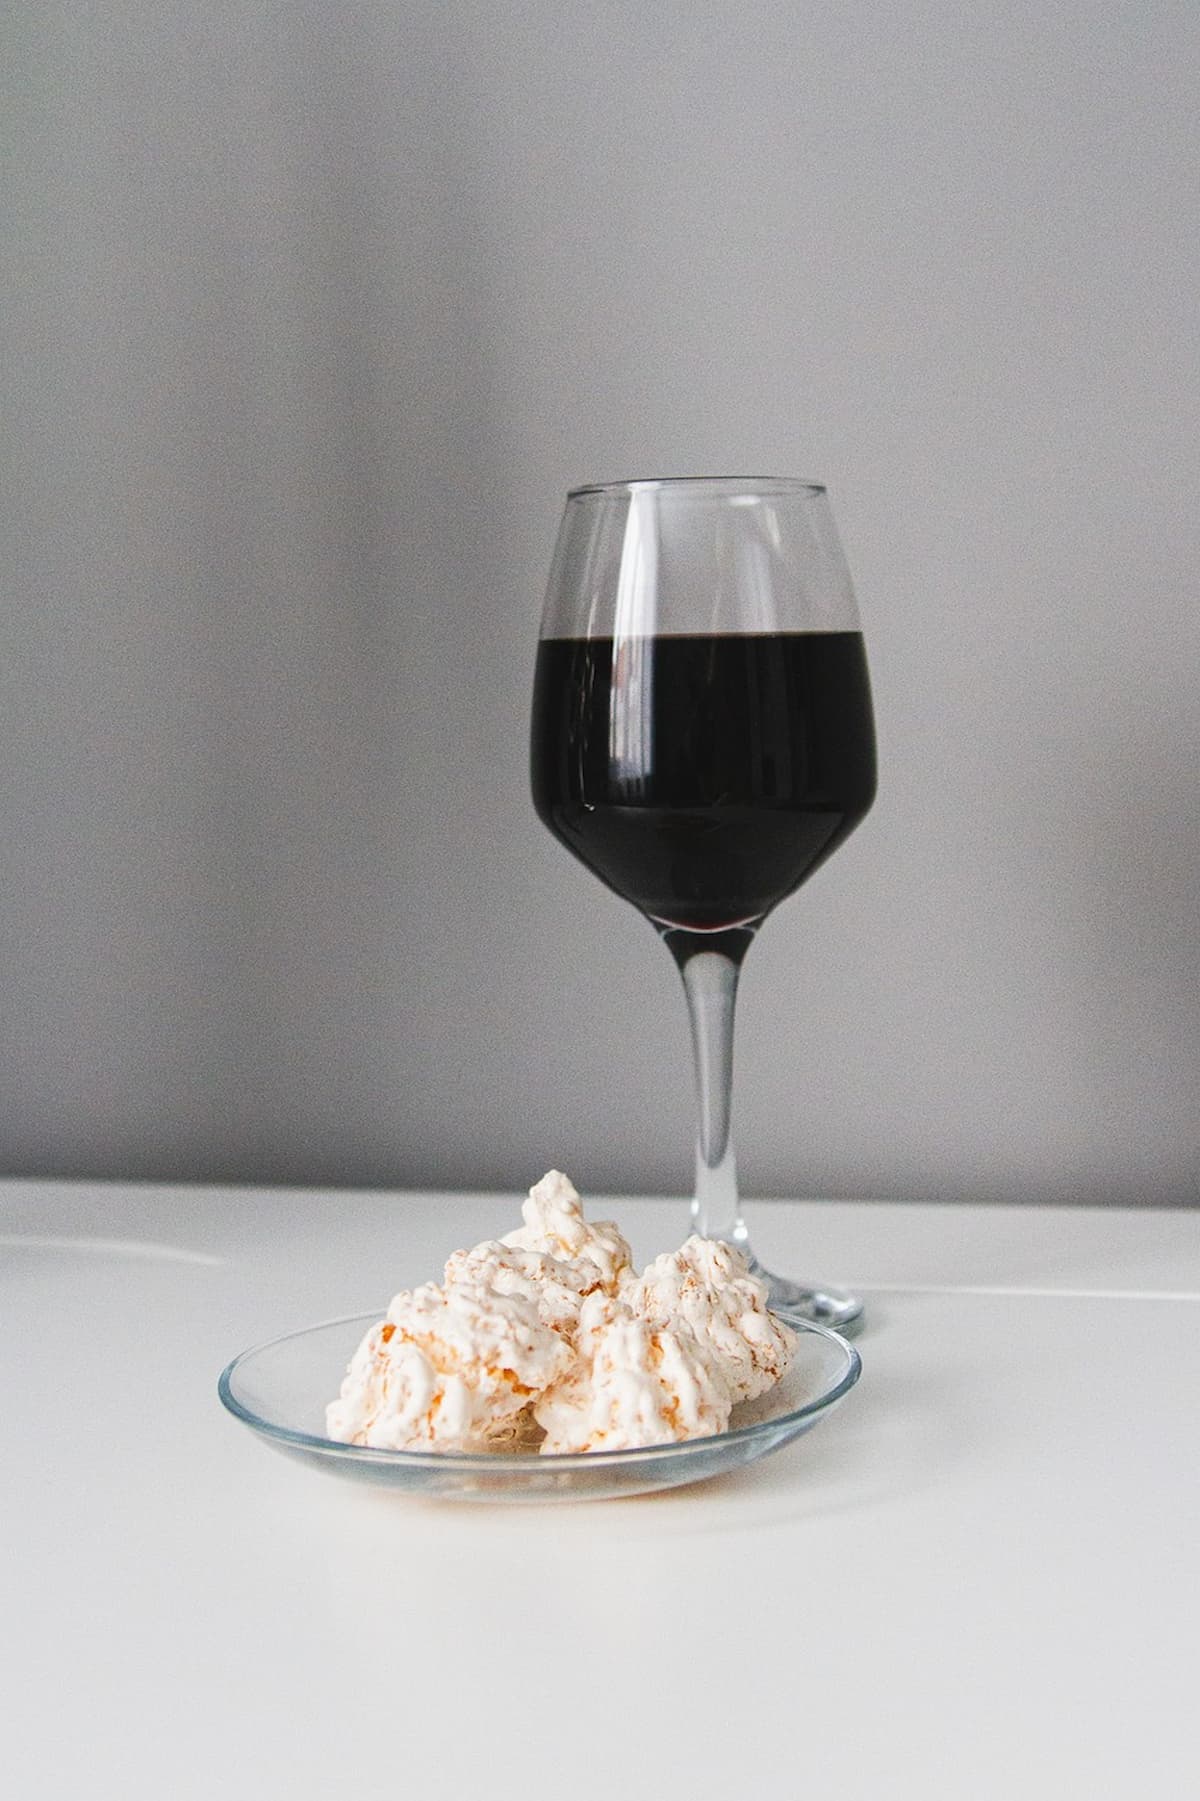 Uma taça de vinho em uma mesa branca, junto com uma prato com doces